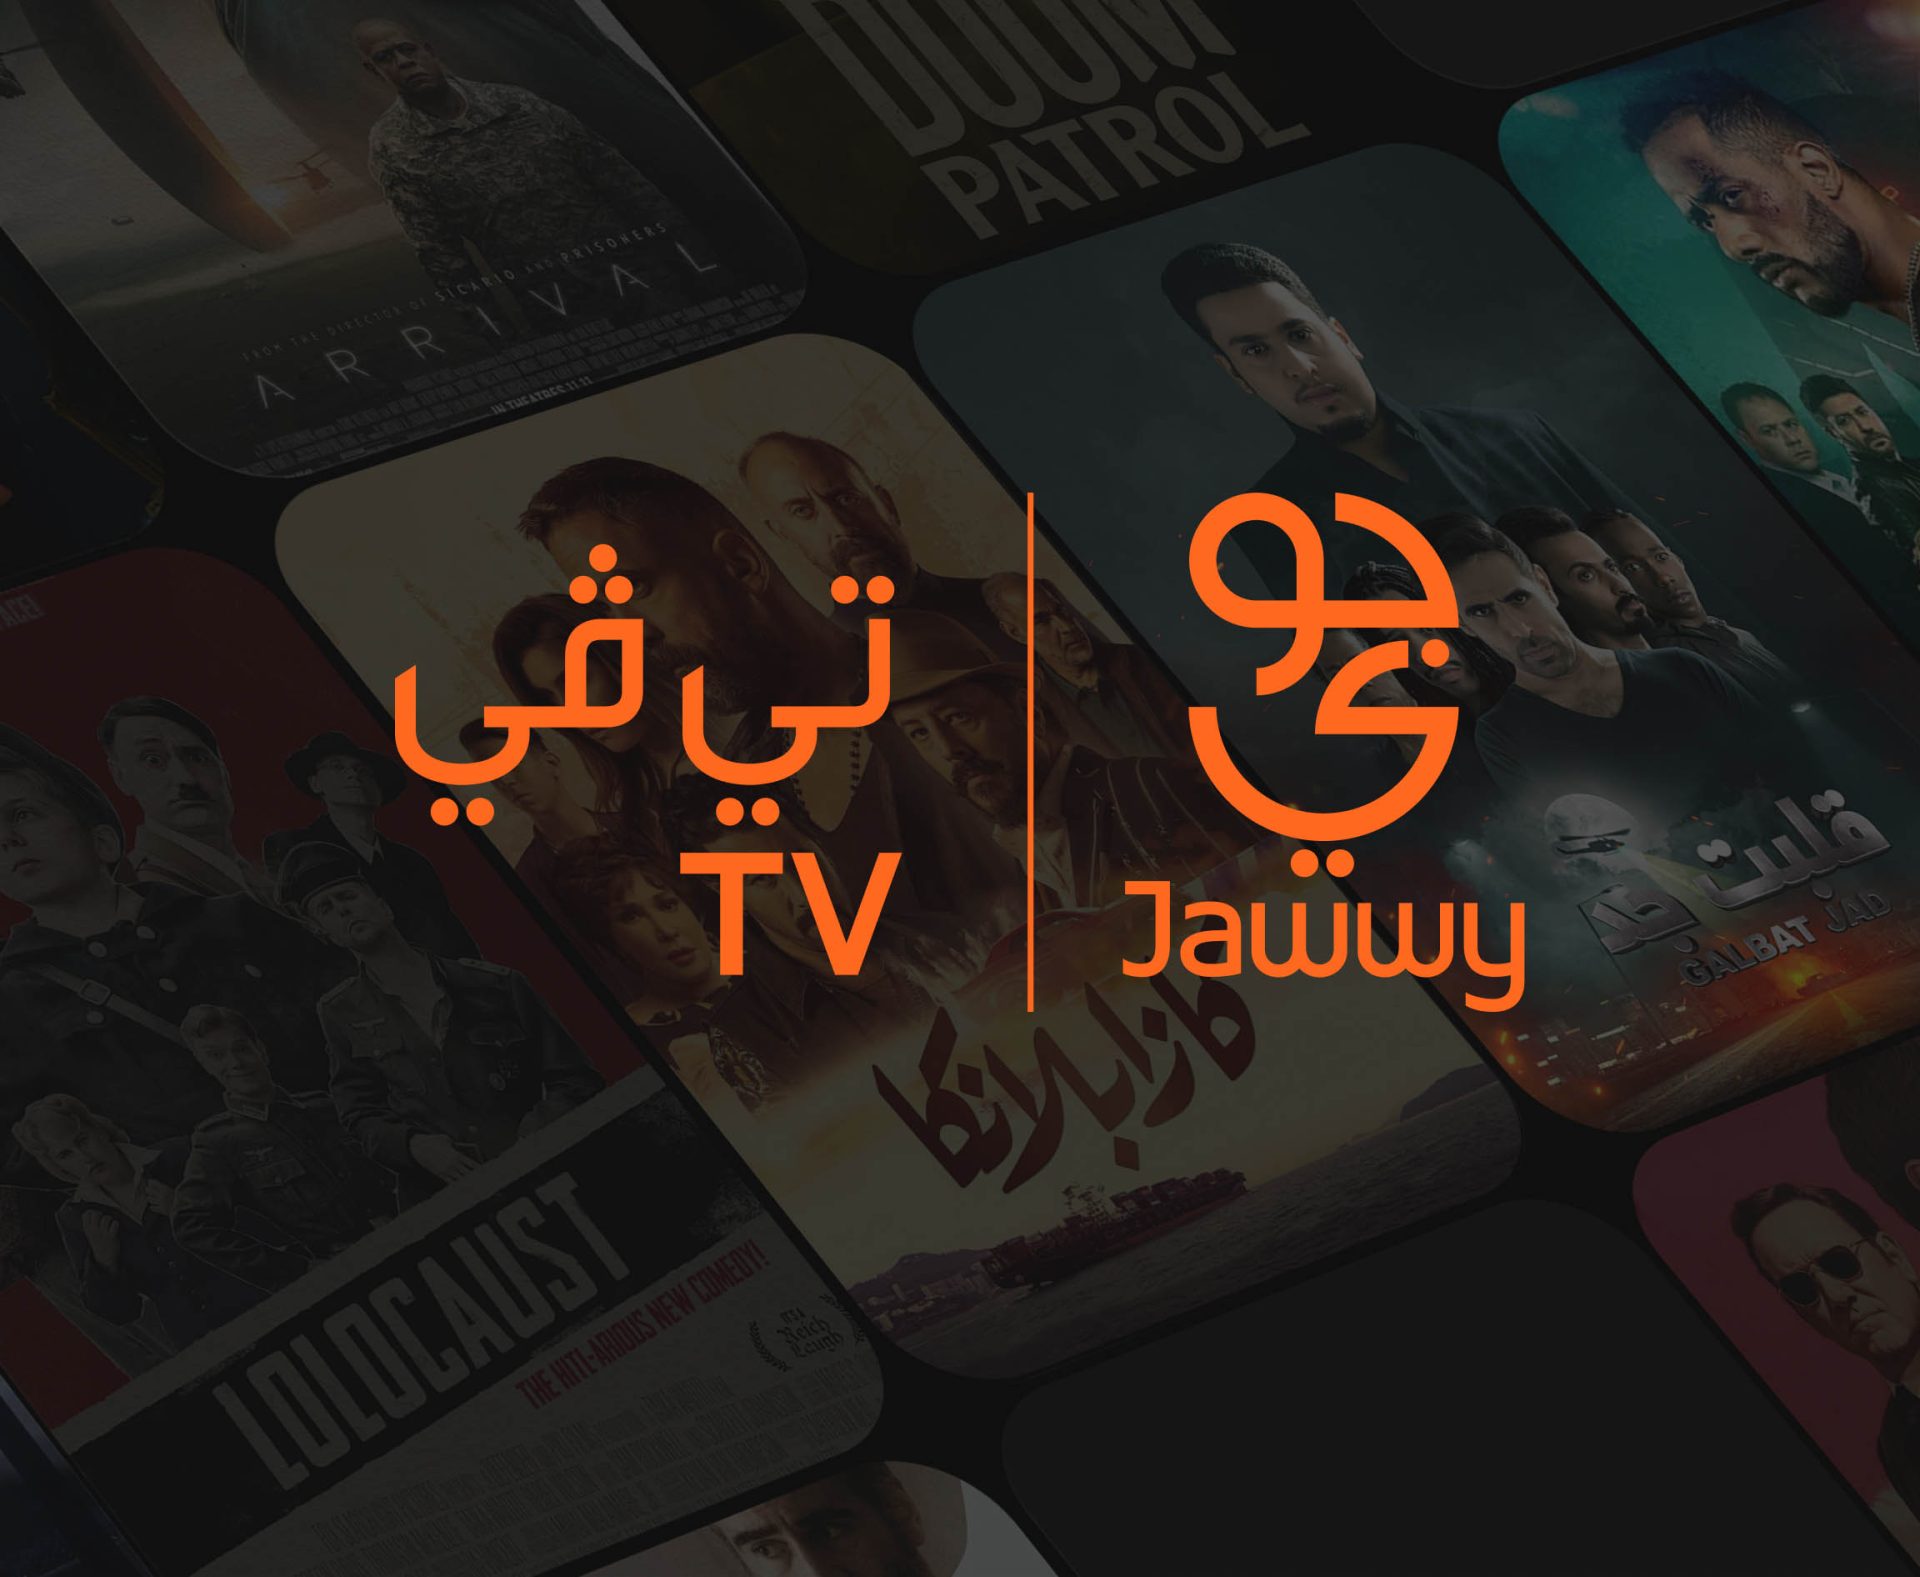 تحميل جوي تي في على التلفزيون | أفضل 3 باقات من jawwy tv